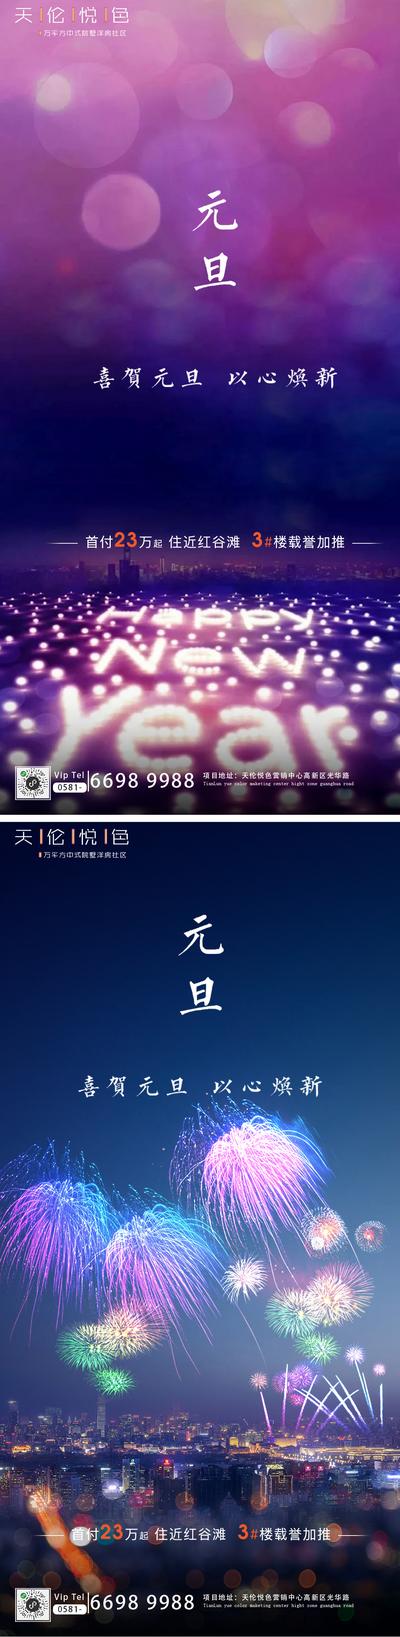 南门网 海报 公历节日  新年 元旦 祝福 烟花  系列